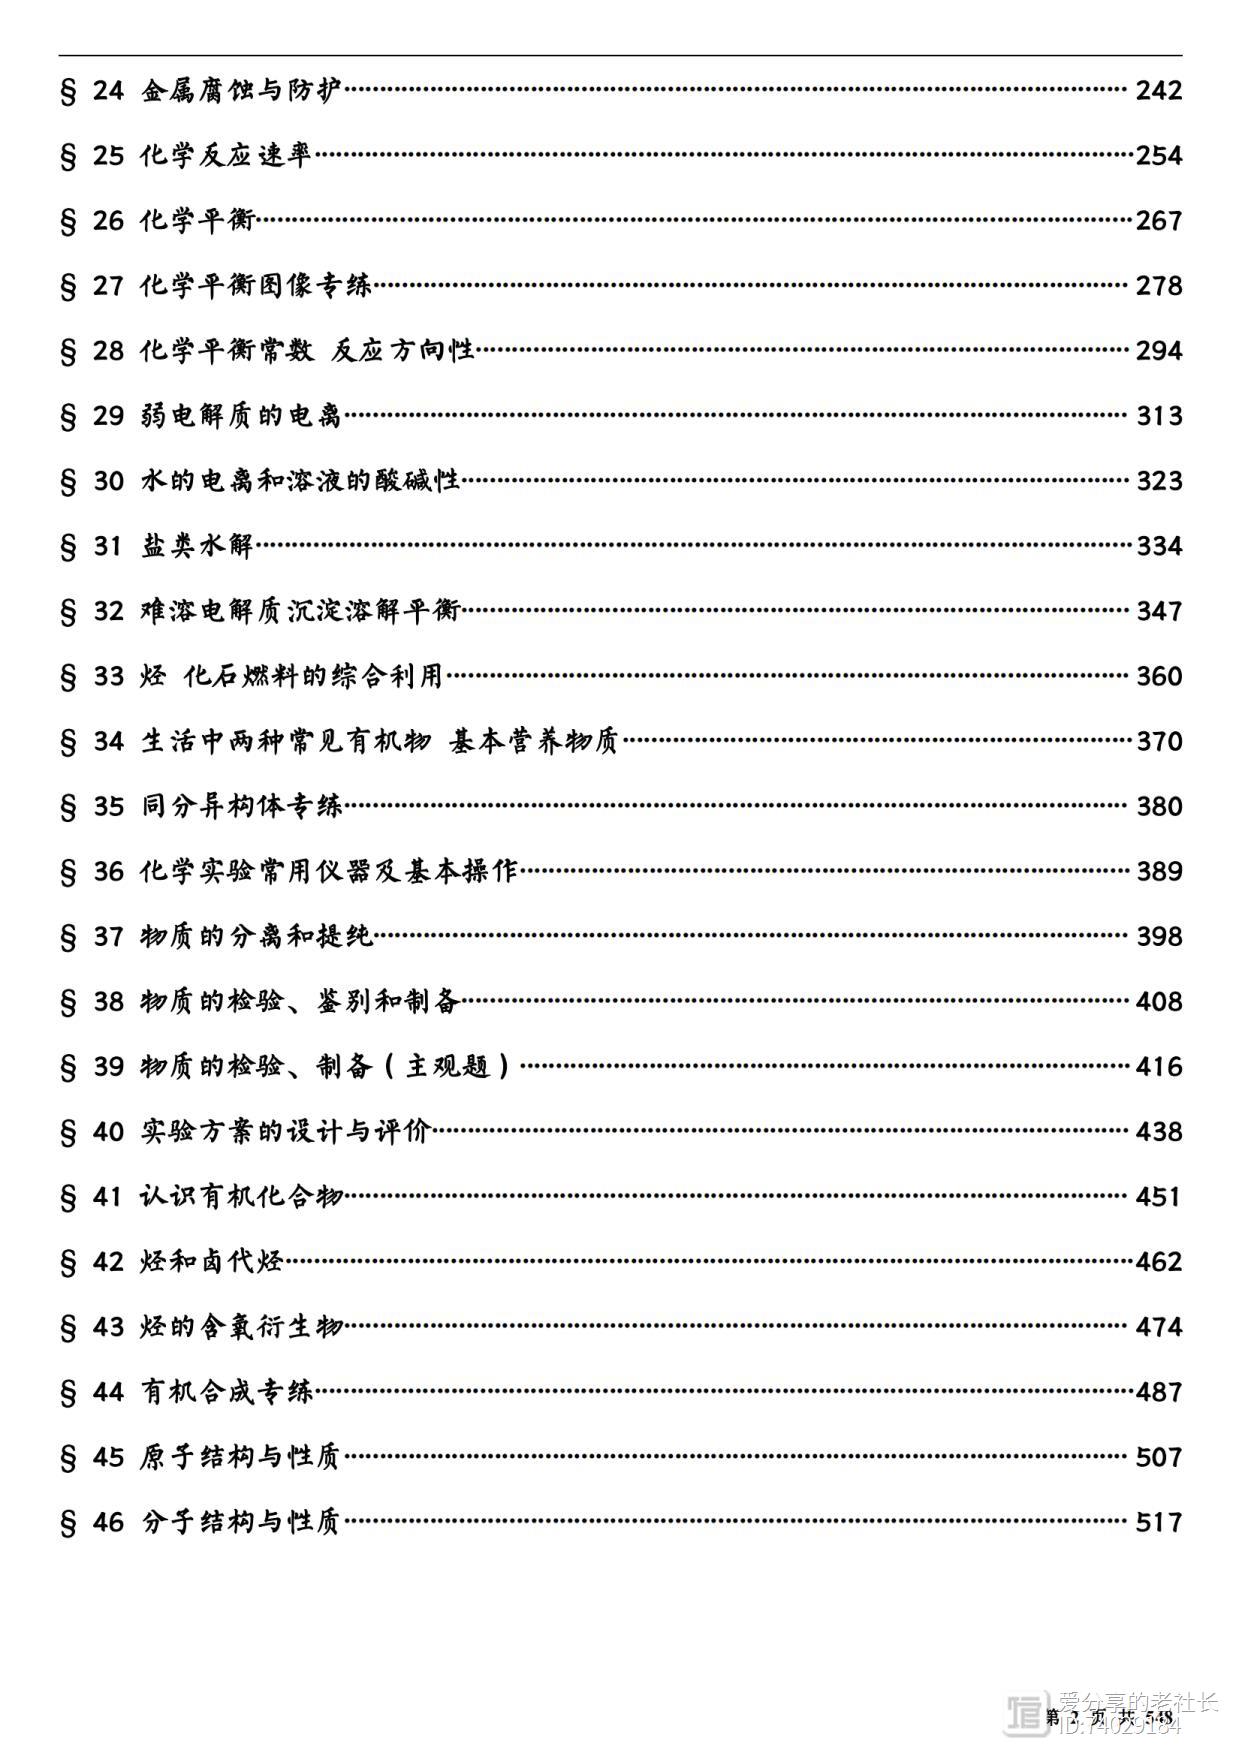 高中化学——高三基础训练1100题(含解析)，总汇成46专题 548页